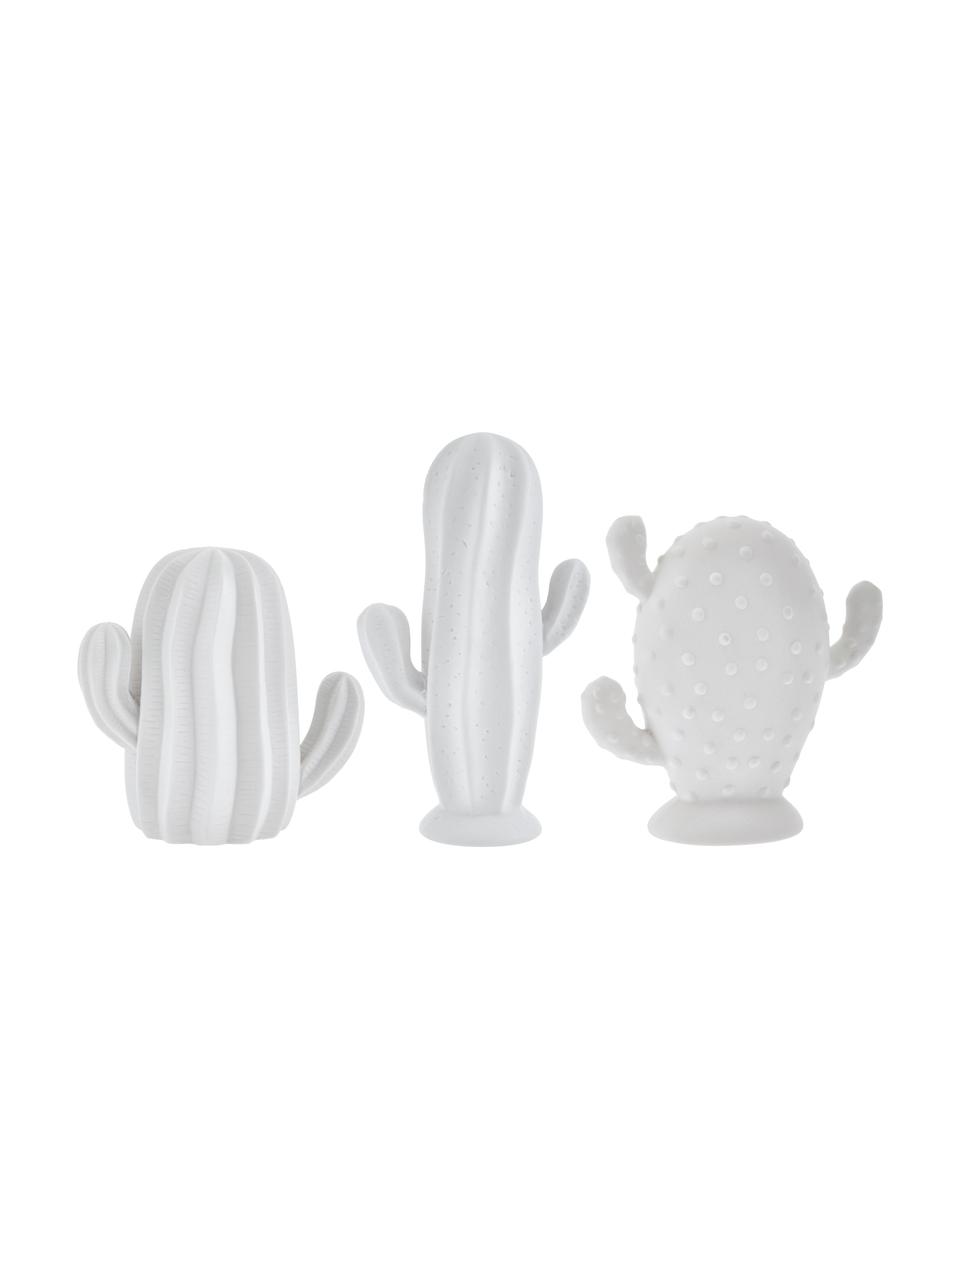 Komplet kaktusów dekoracyjnych Dina, 3 elem., Porcelana surowa, matowa, Biały, Komplet z różnymi rozmiarami